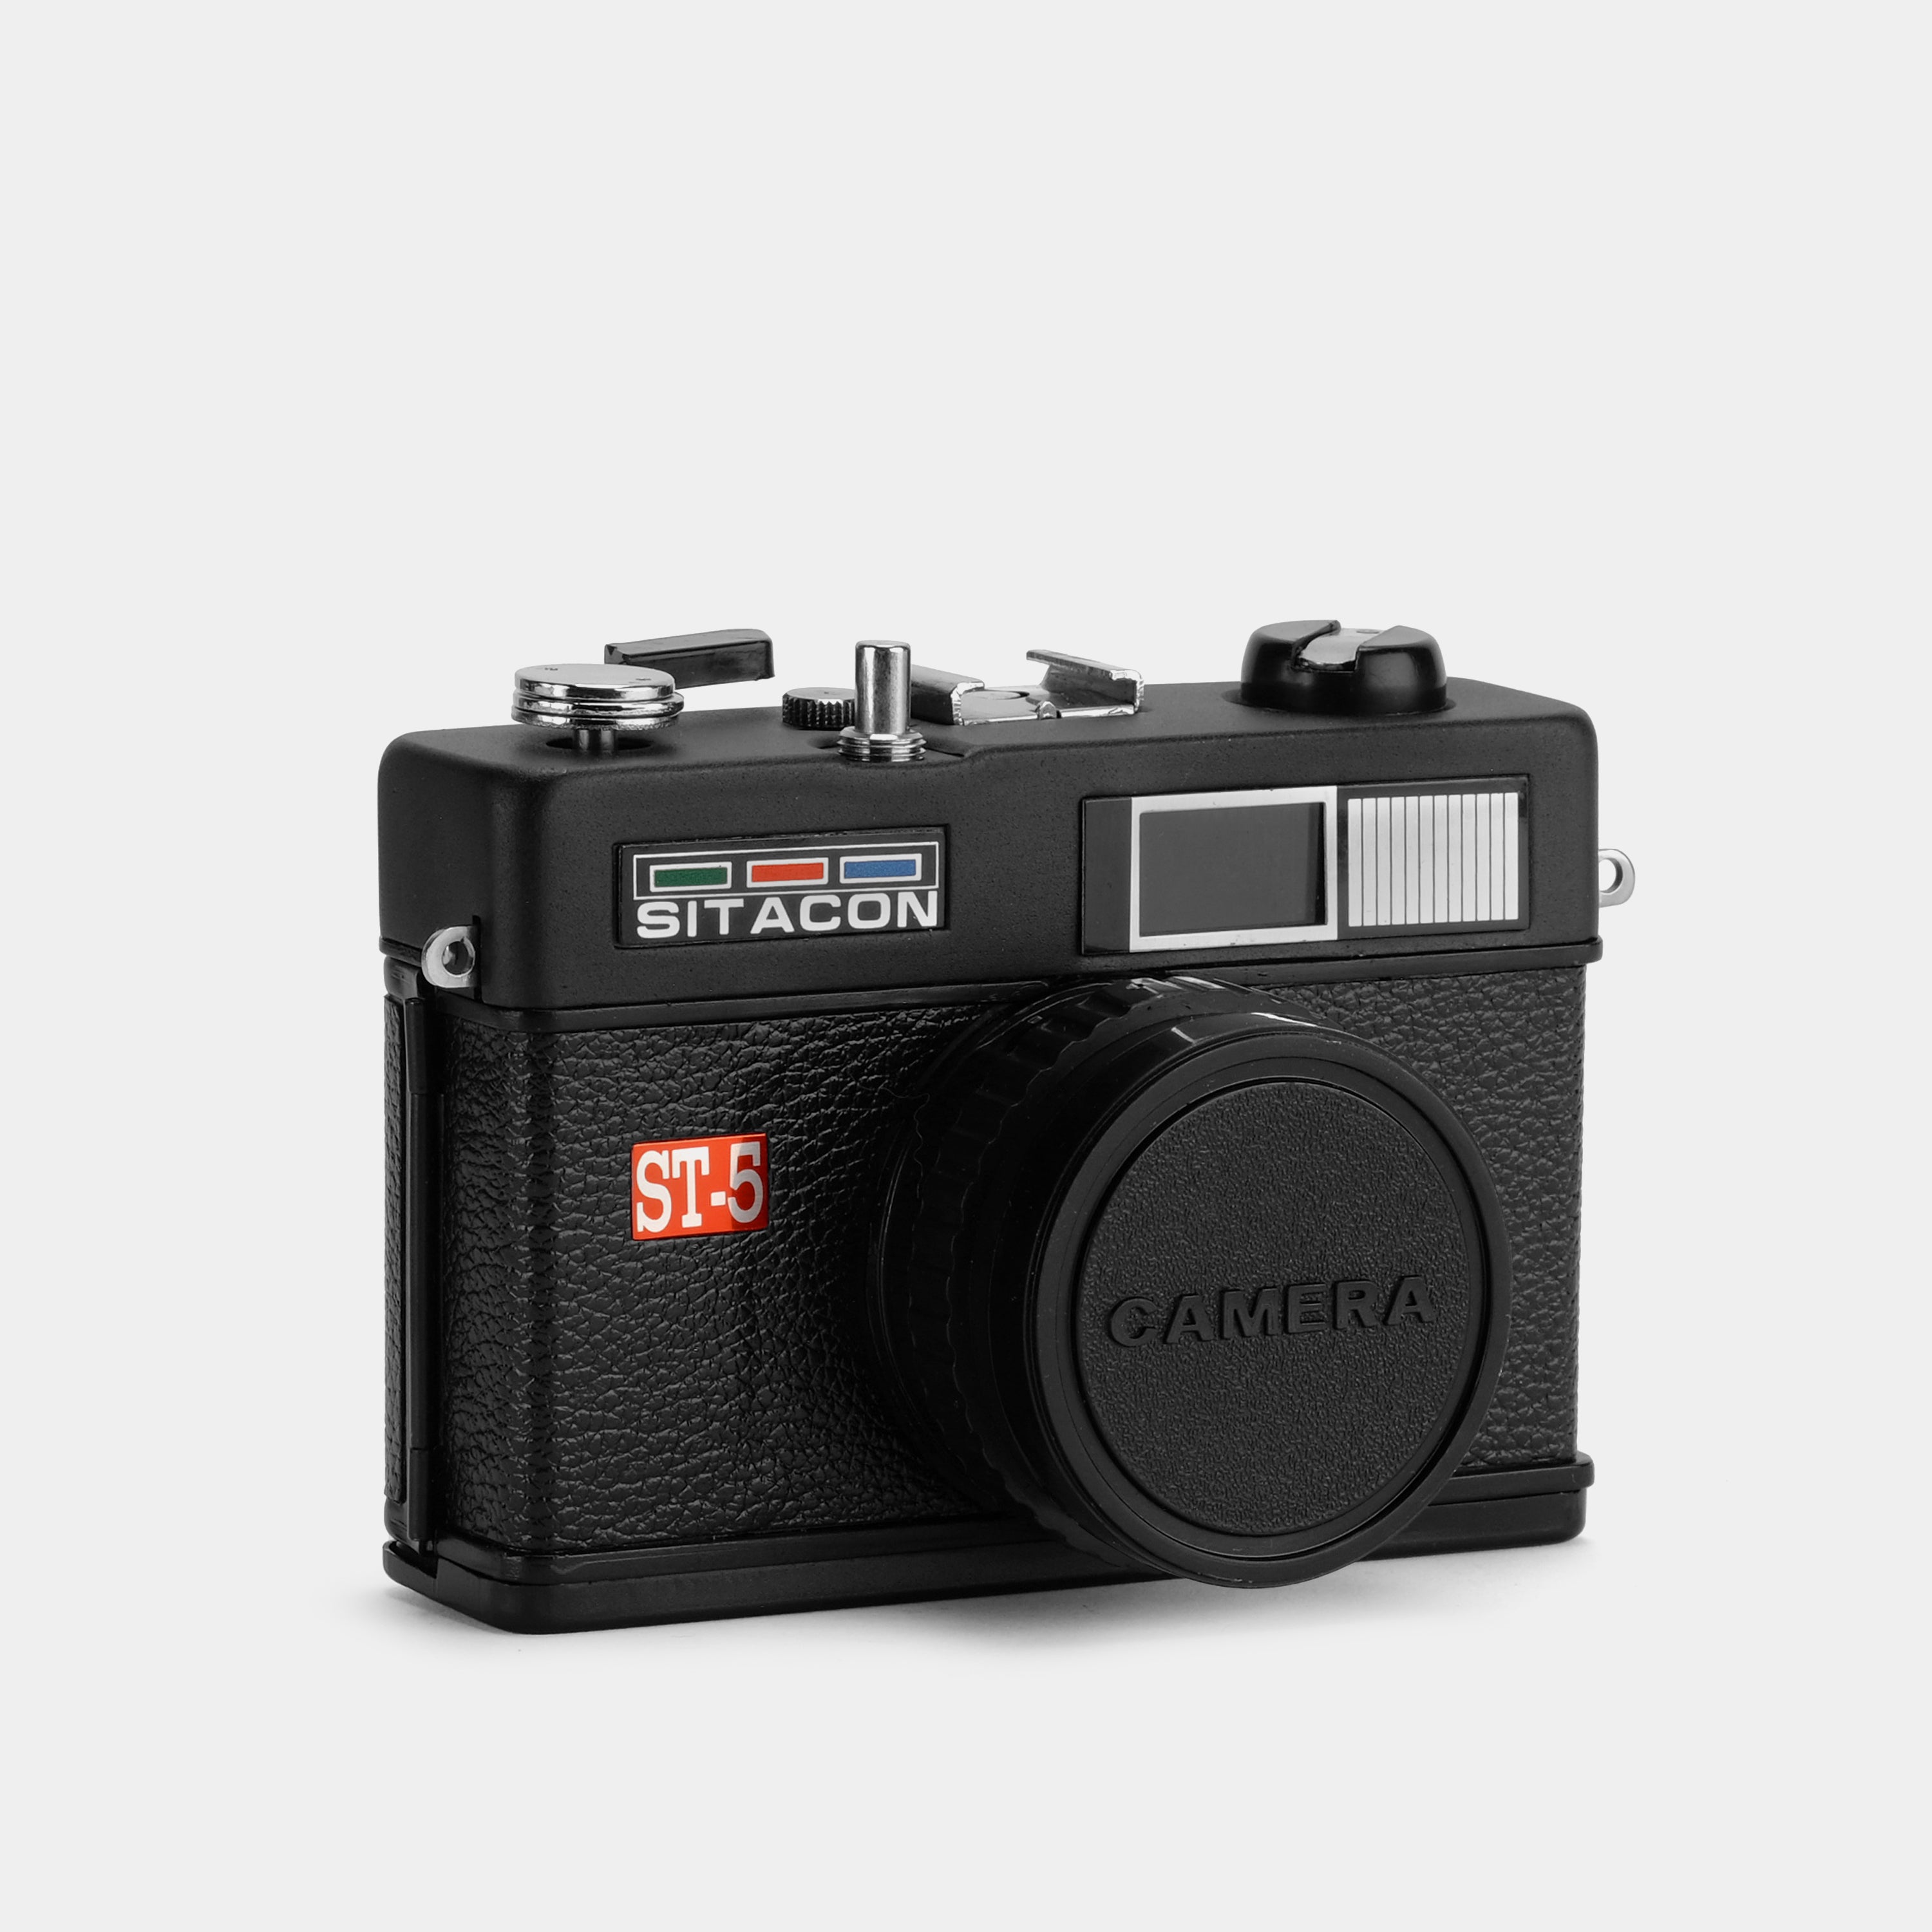 Sitacon ST-5 35mm Film Camera